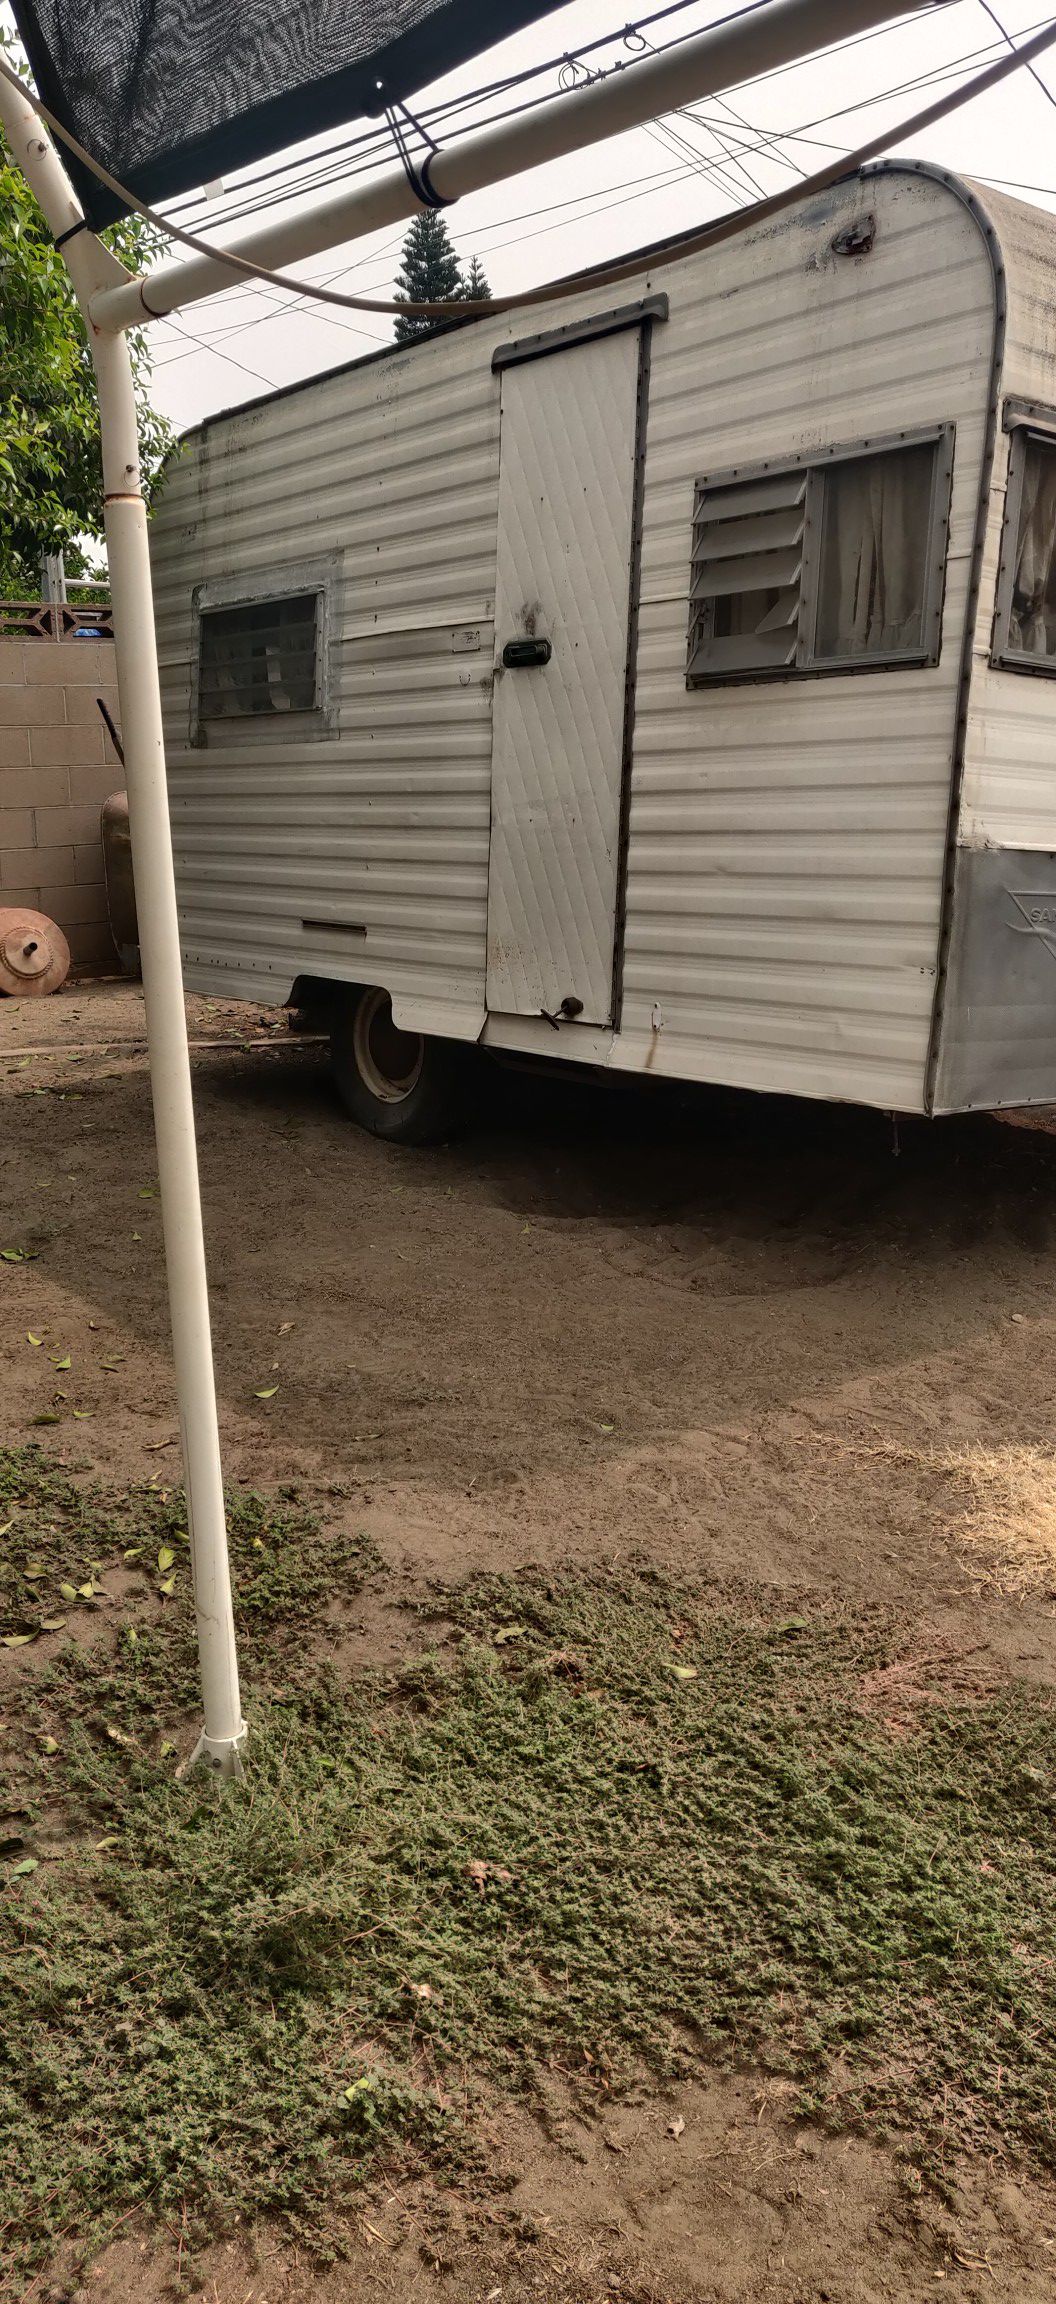 Santa Fe travel trailer rv camping